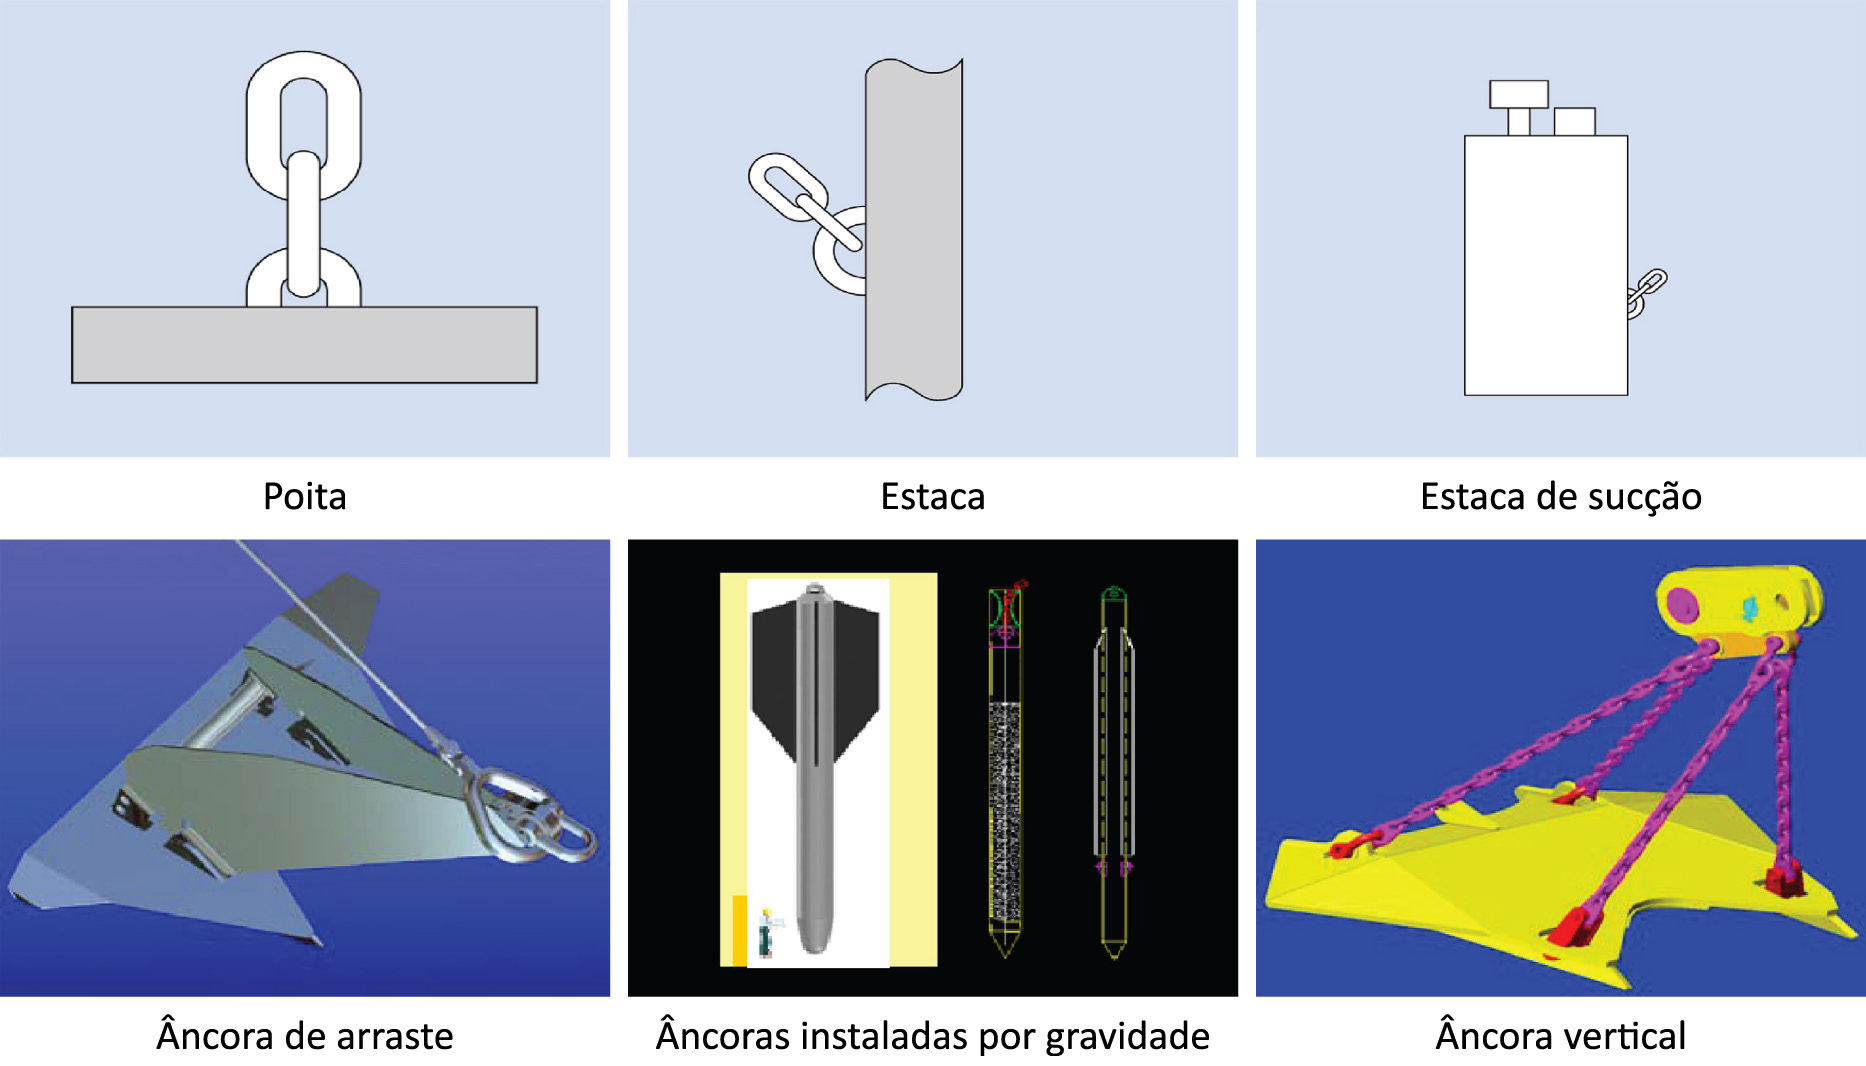 Jorge et al. Figura 1. Esquema de sistema de ancoragem de plataforma semi-submersível [1].